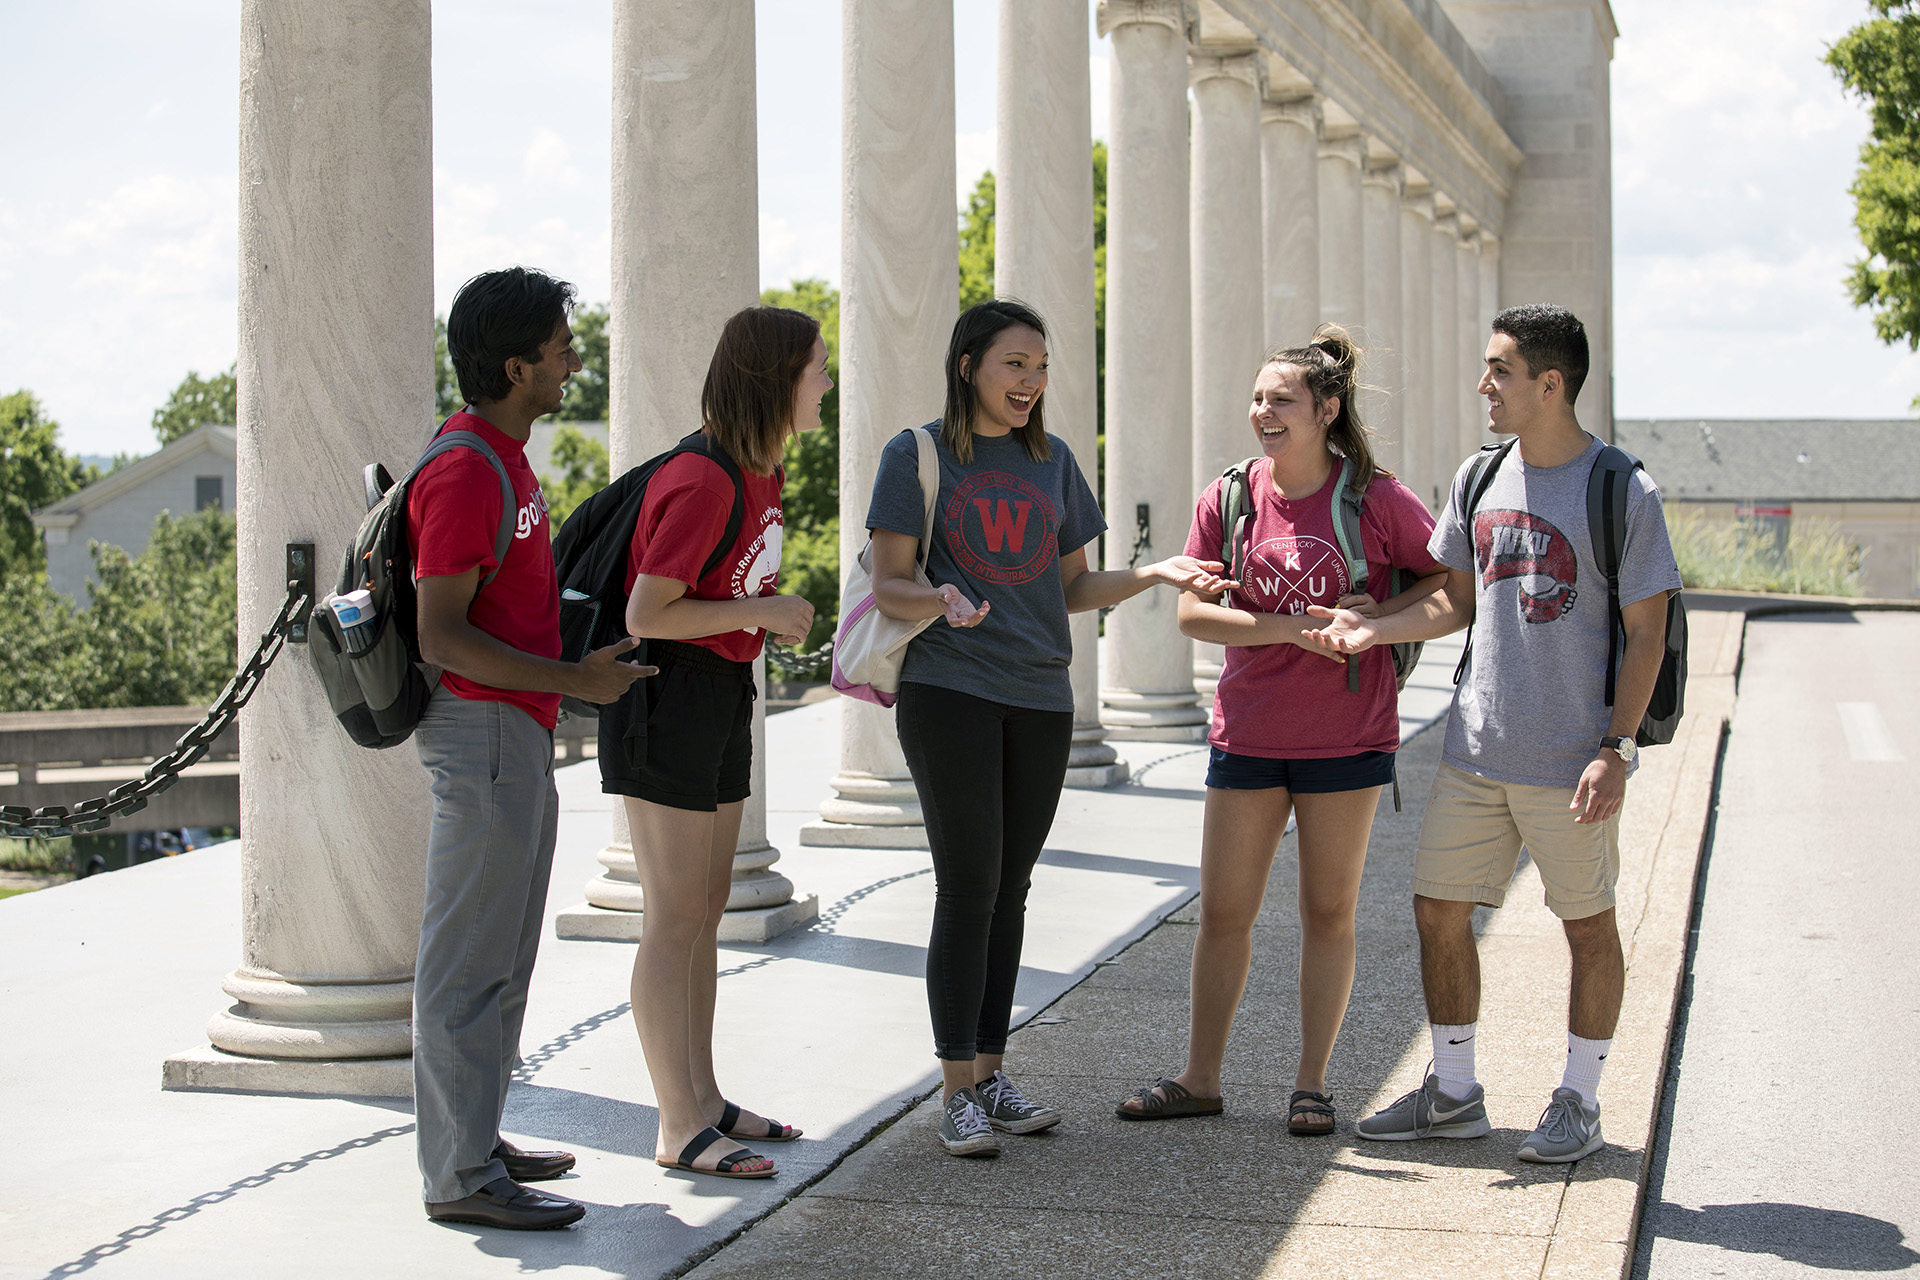 Five WKU students talking outside.